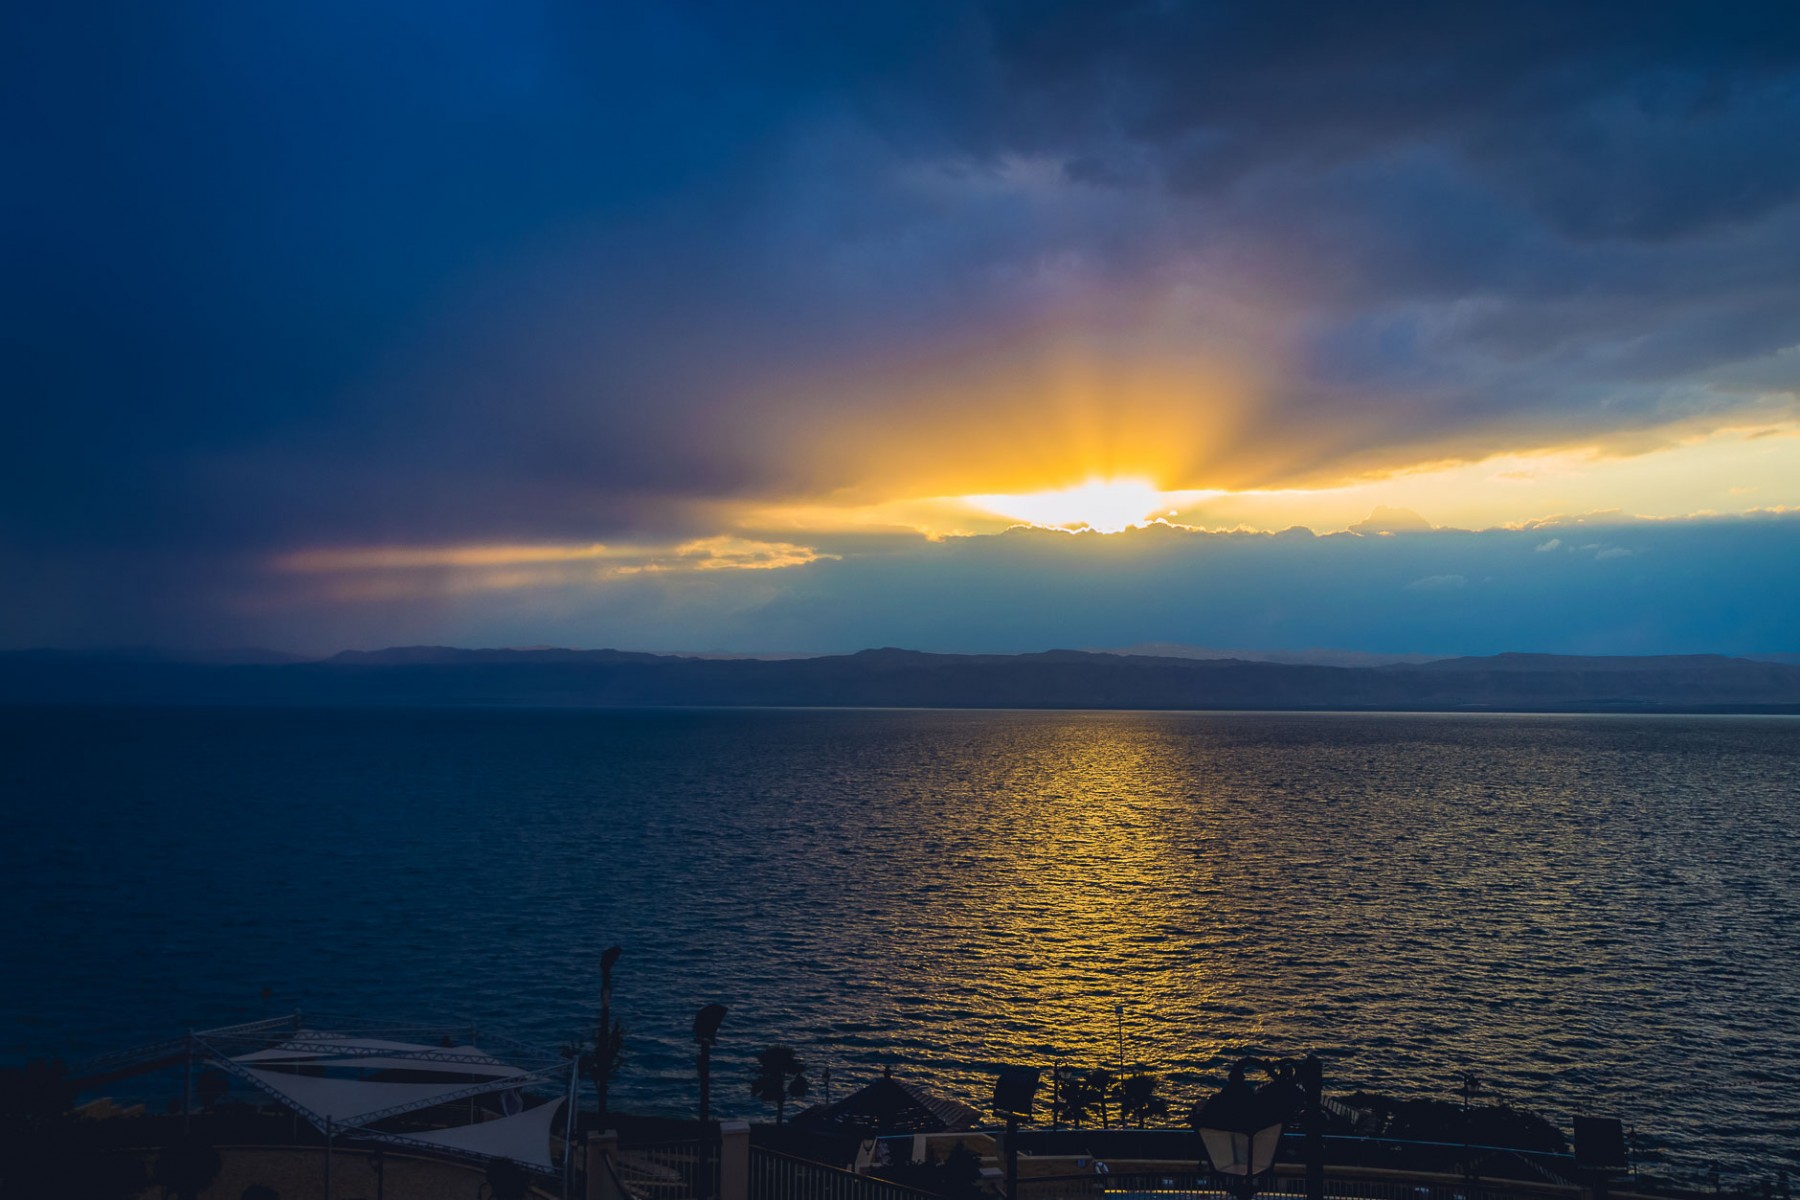 Sunset over the Dead Sea, Jordan